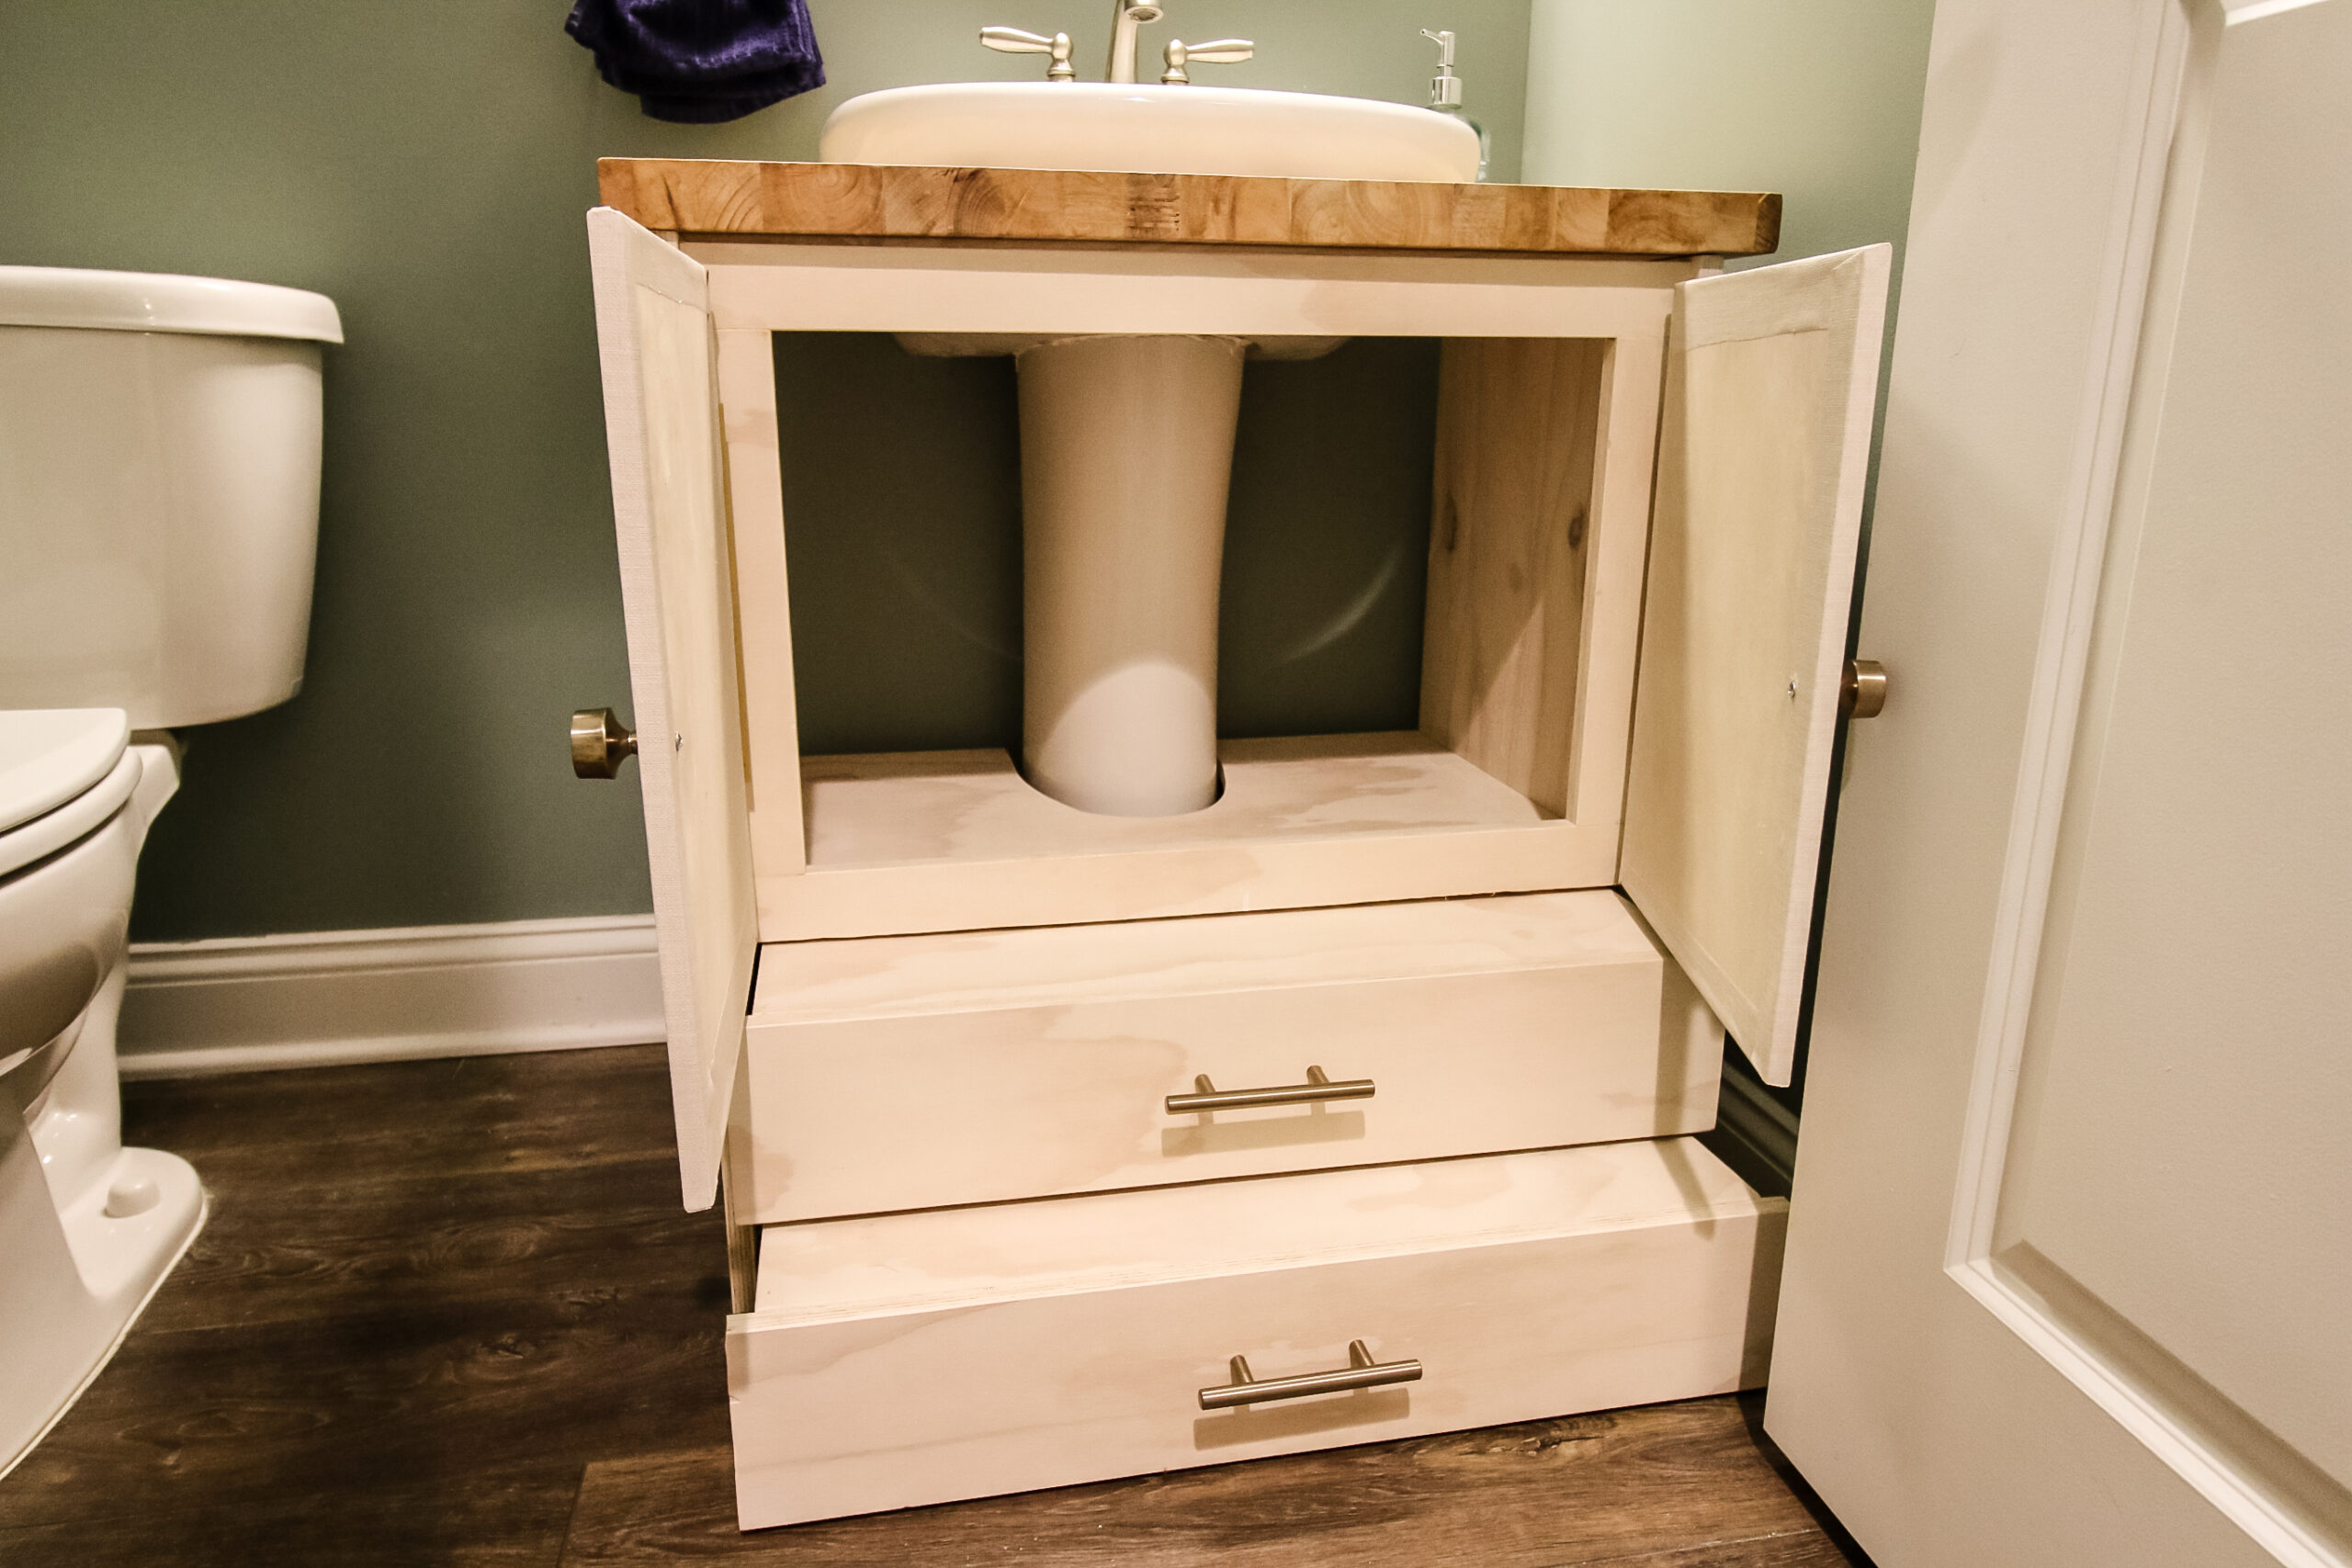 How To Build A Vanity For Pedestal Sink, Wood Pedestal Bathroom Vanity